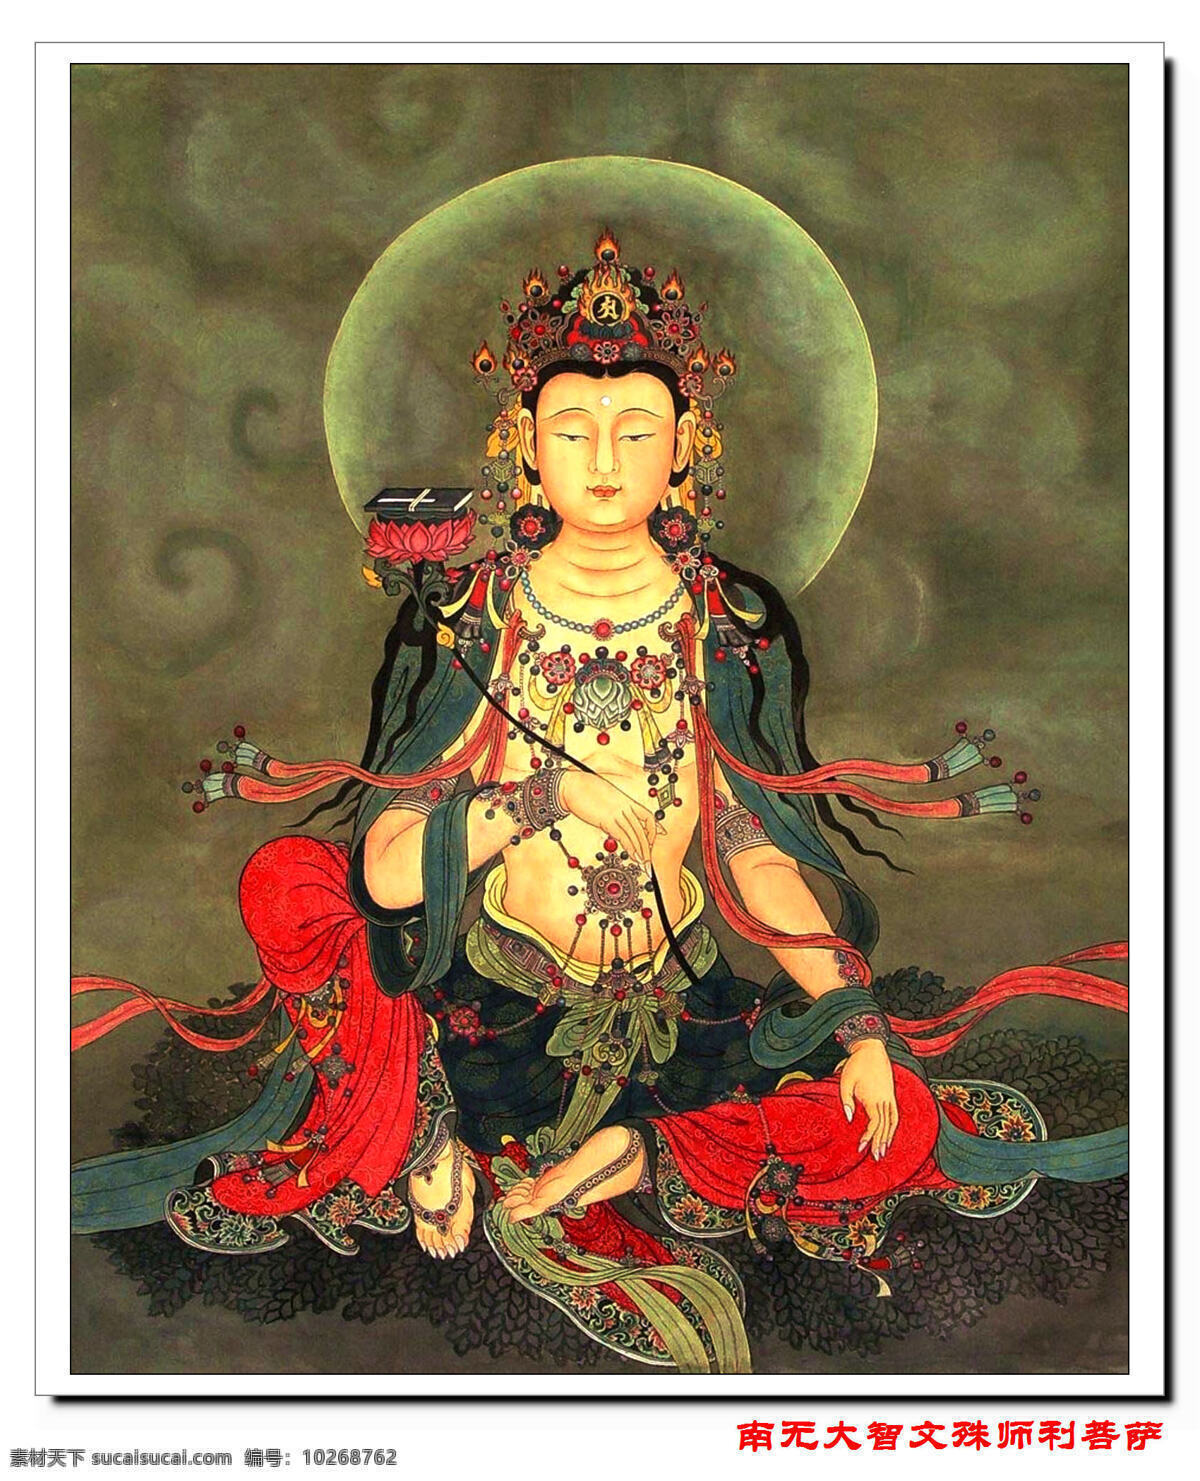 大智文殊菩萨 佛教 绘画雕塑 佛菩萨形象 高清 文化艺术 宗教信仰